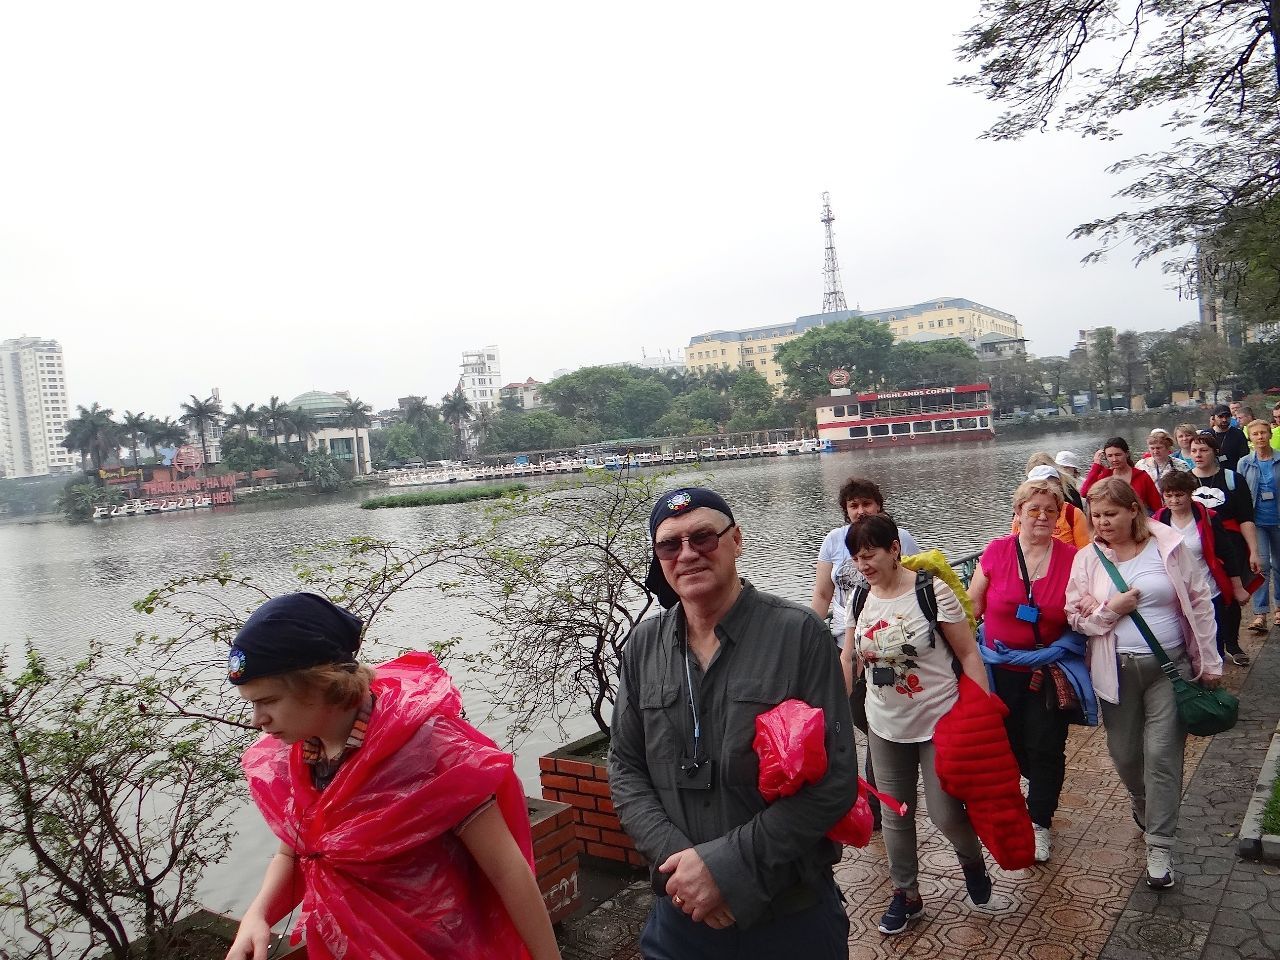 пешая прогулка по Ханою... в день пешком проходили около 10-12 км - Фотоотчет Вьетнам 2019. Часть 1 - день 1